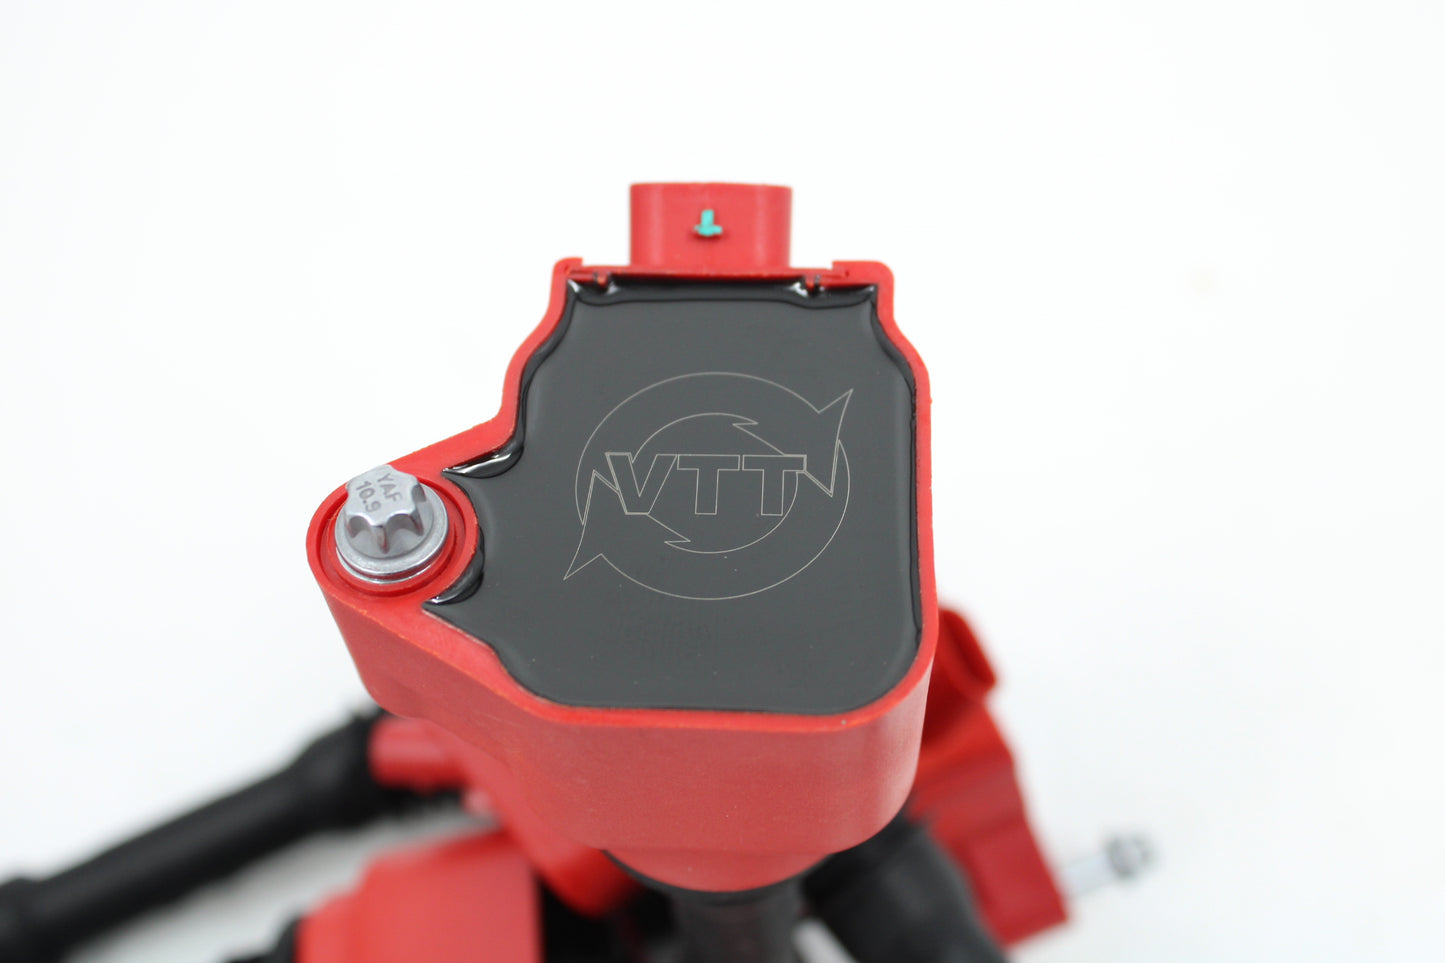 VTT - Ignition Coil Kit || BMW